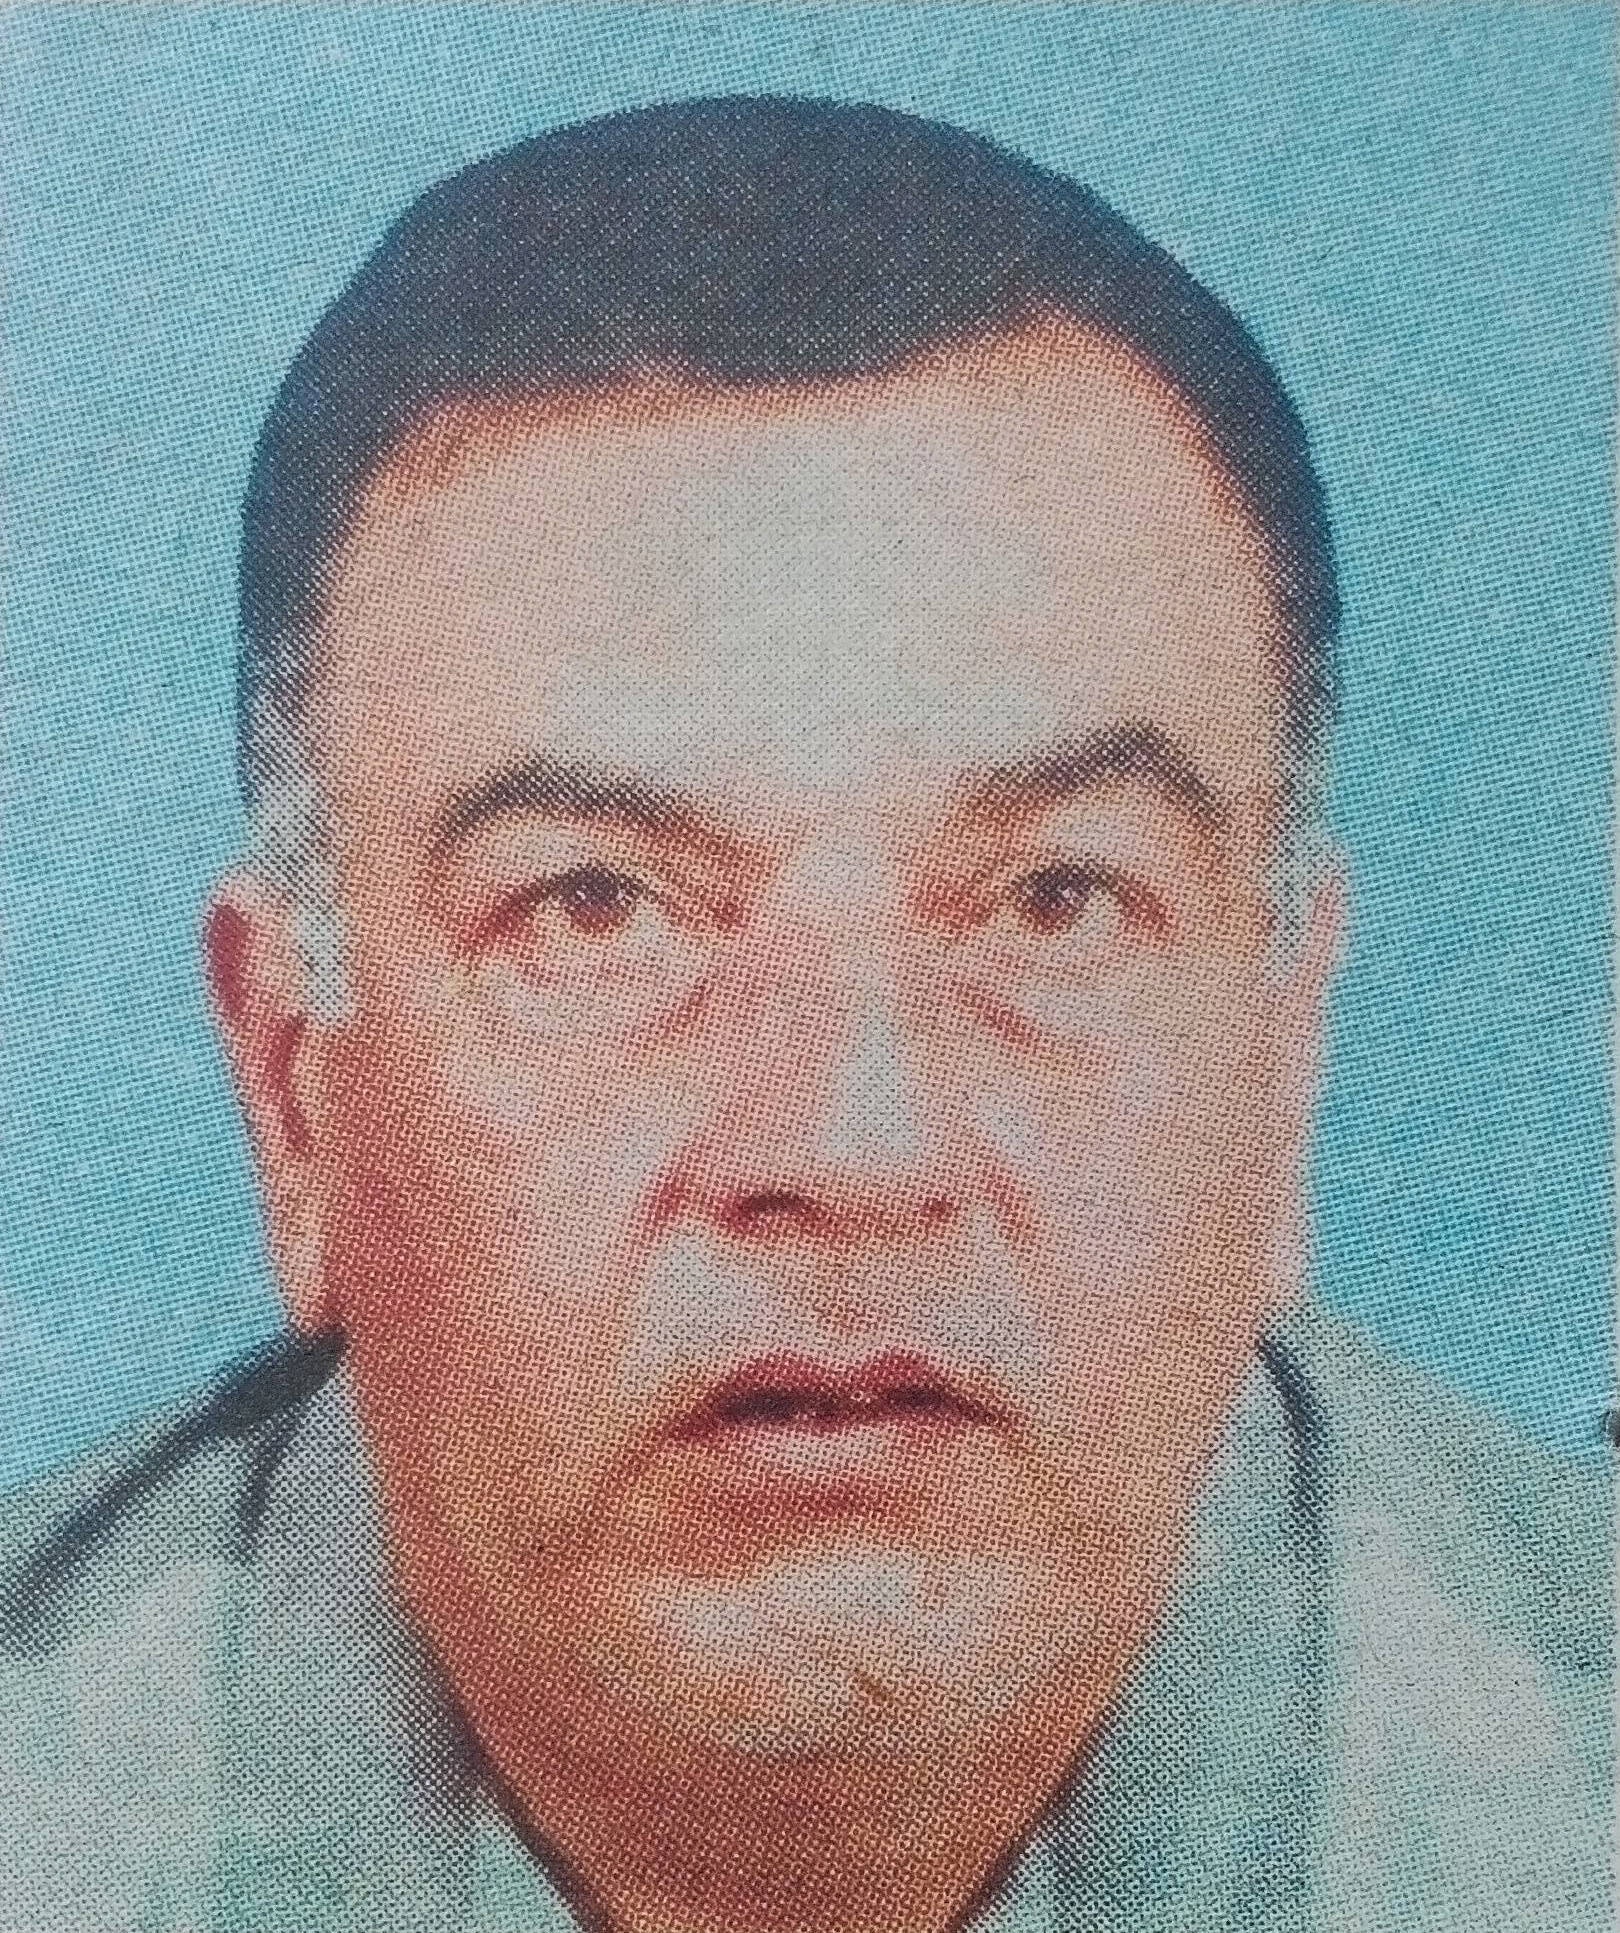 Obituary Image of Mohamed lqbal Mohamed Raffiq Abdulla Kanji